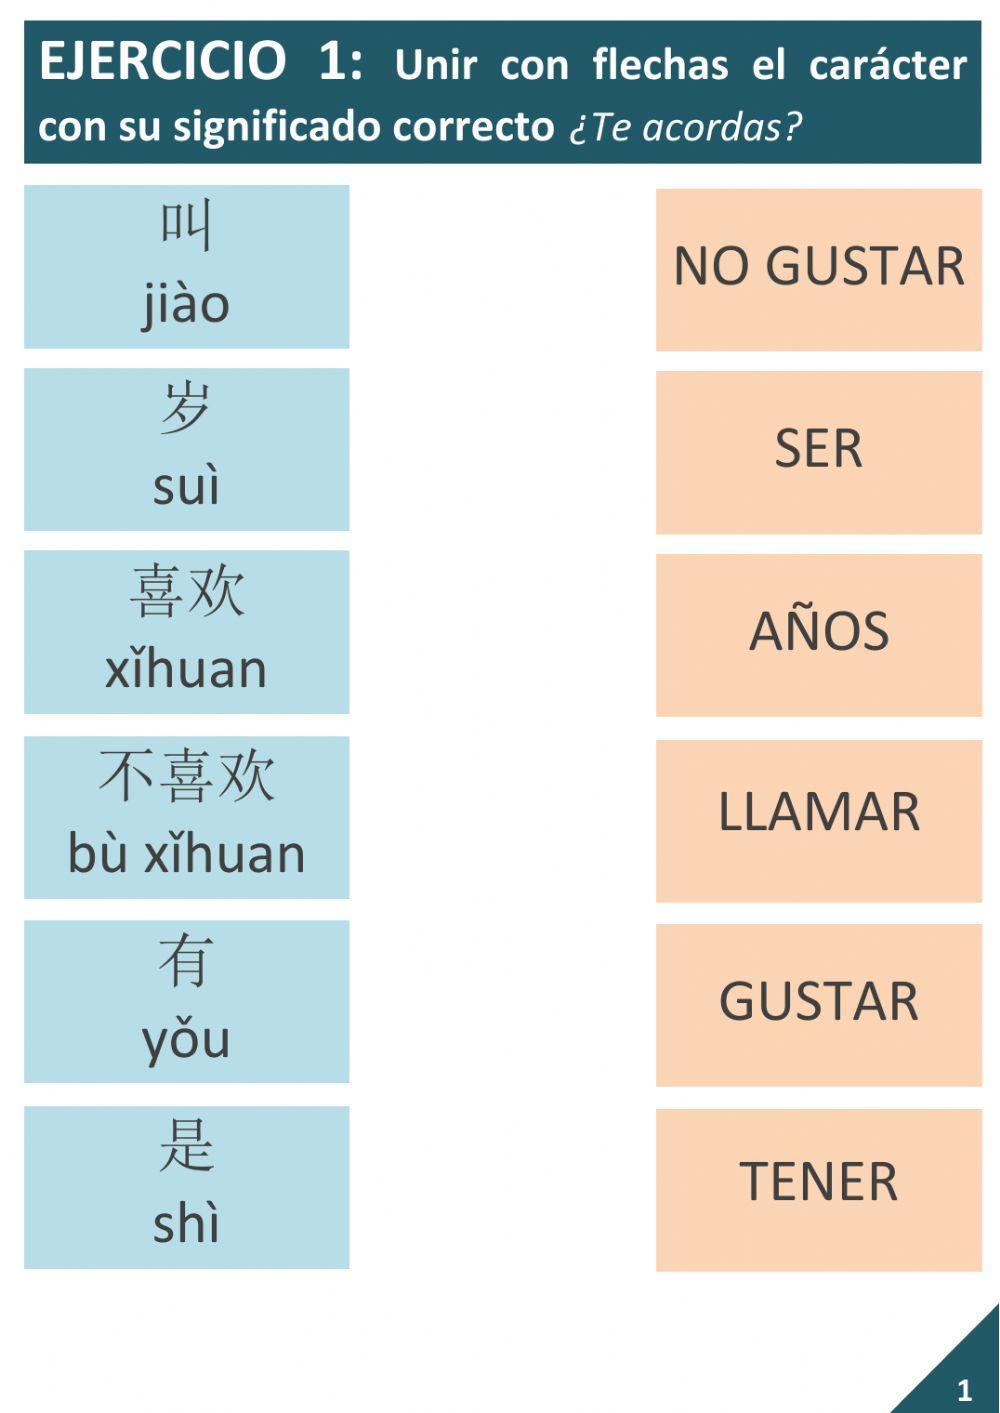 Vocabulario de familia nuclear en chino mandarín